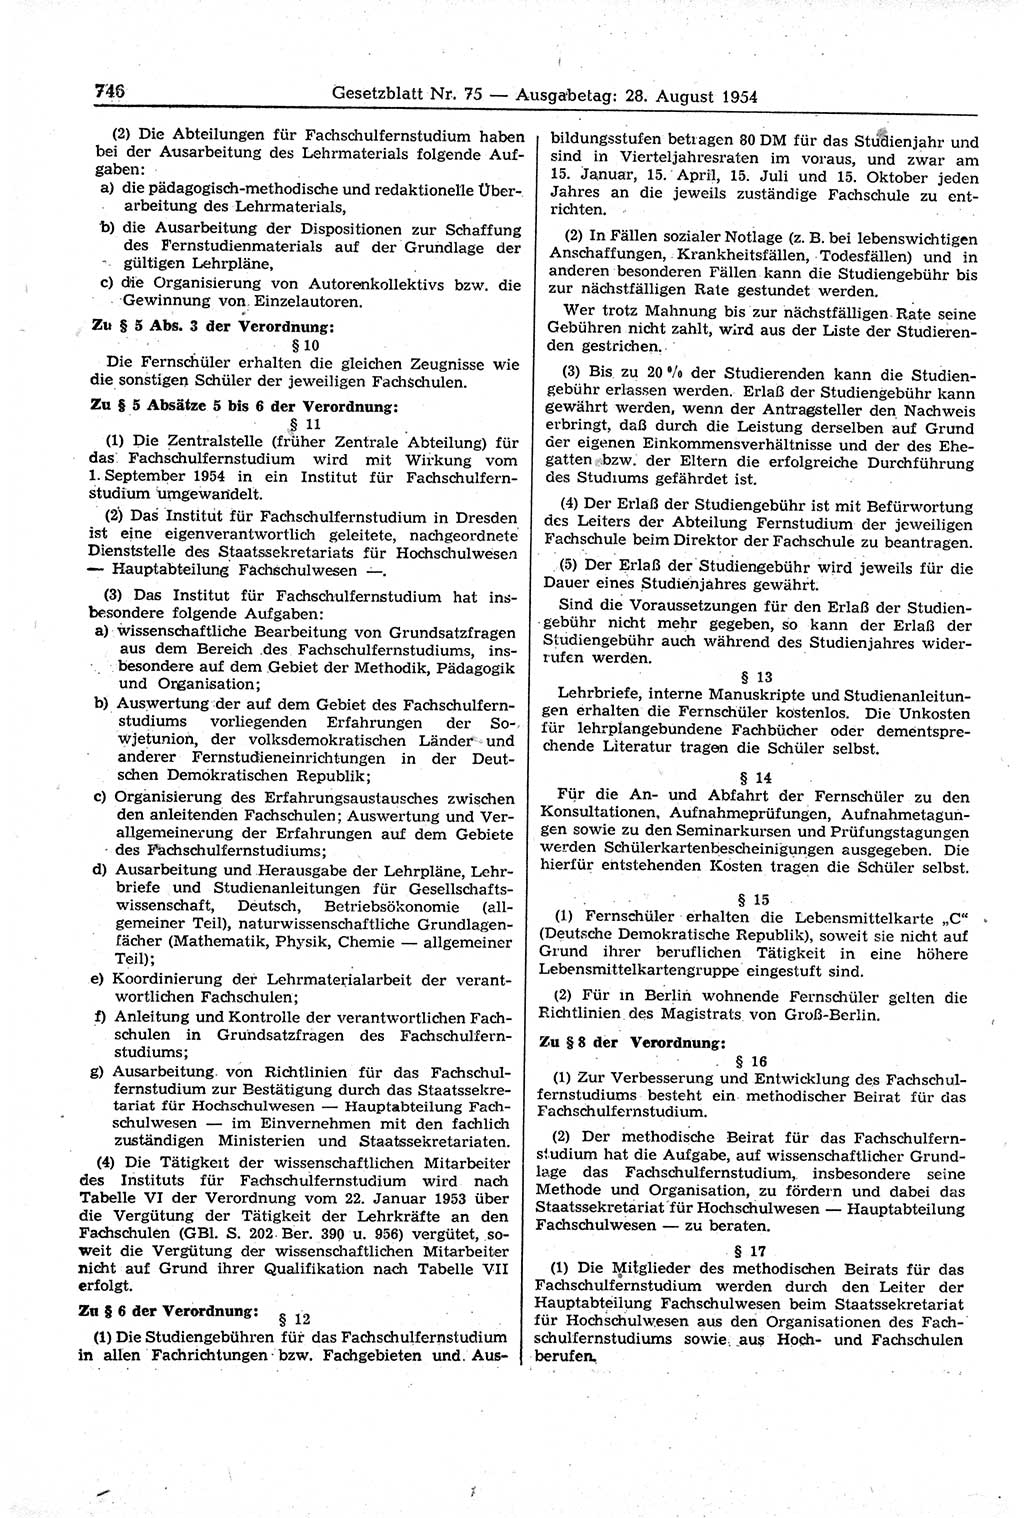 Gesetzblatt (GBl.) der Deutschen Demokratischen Republik (DDR) 1954, Seite 746 (GBl. DDR 1954, S. 746)